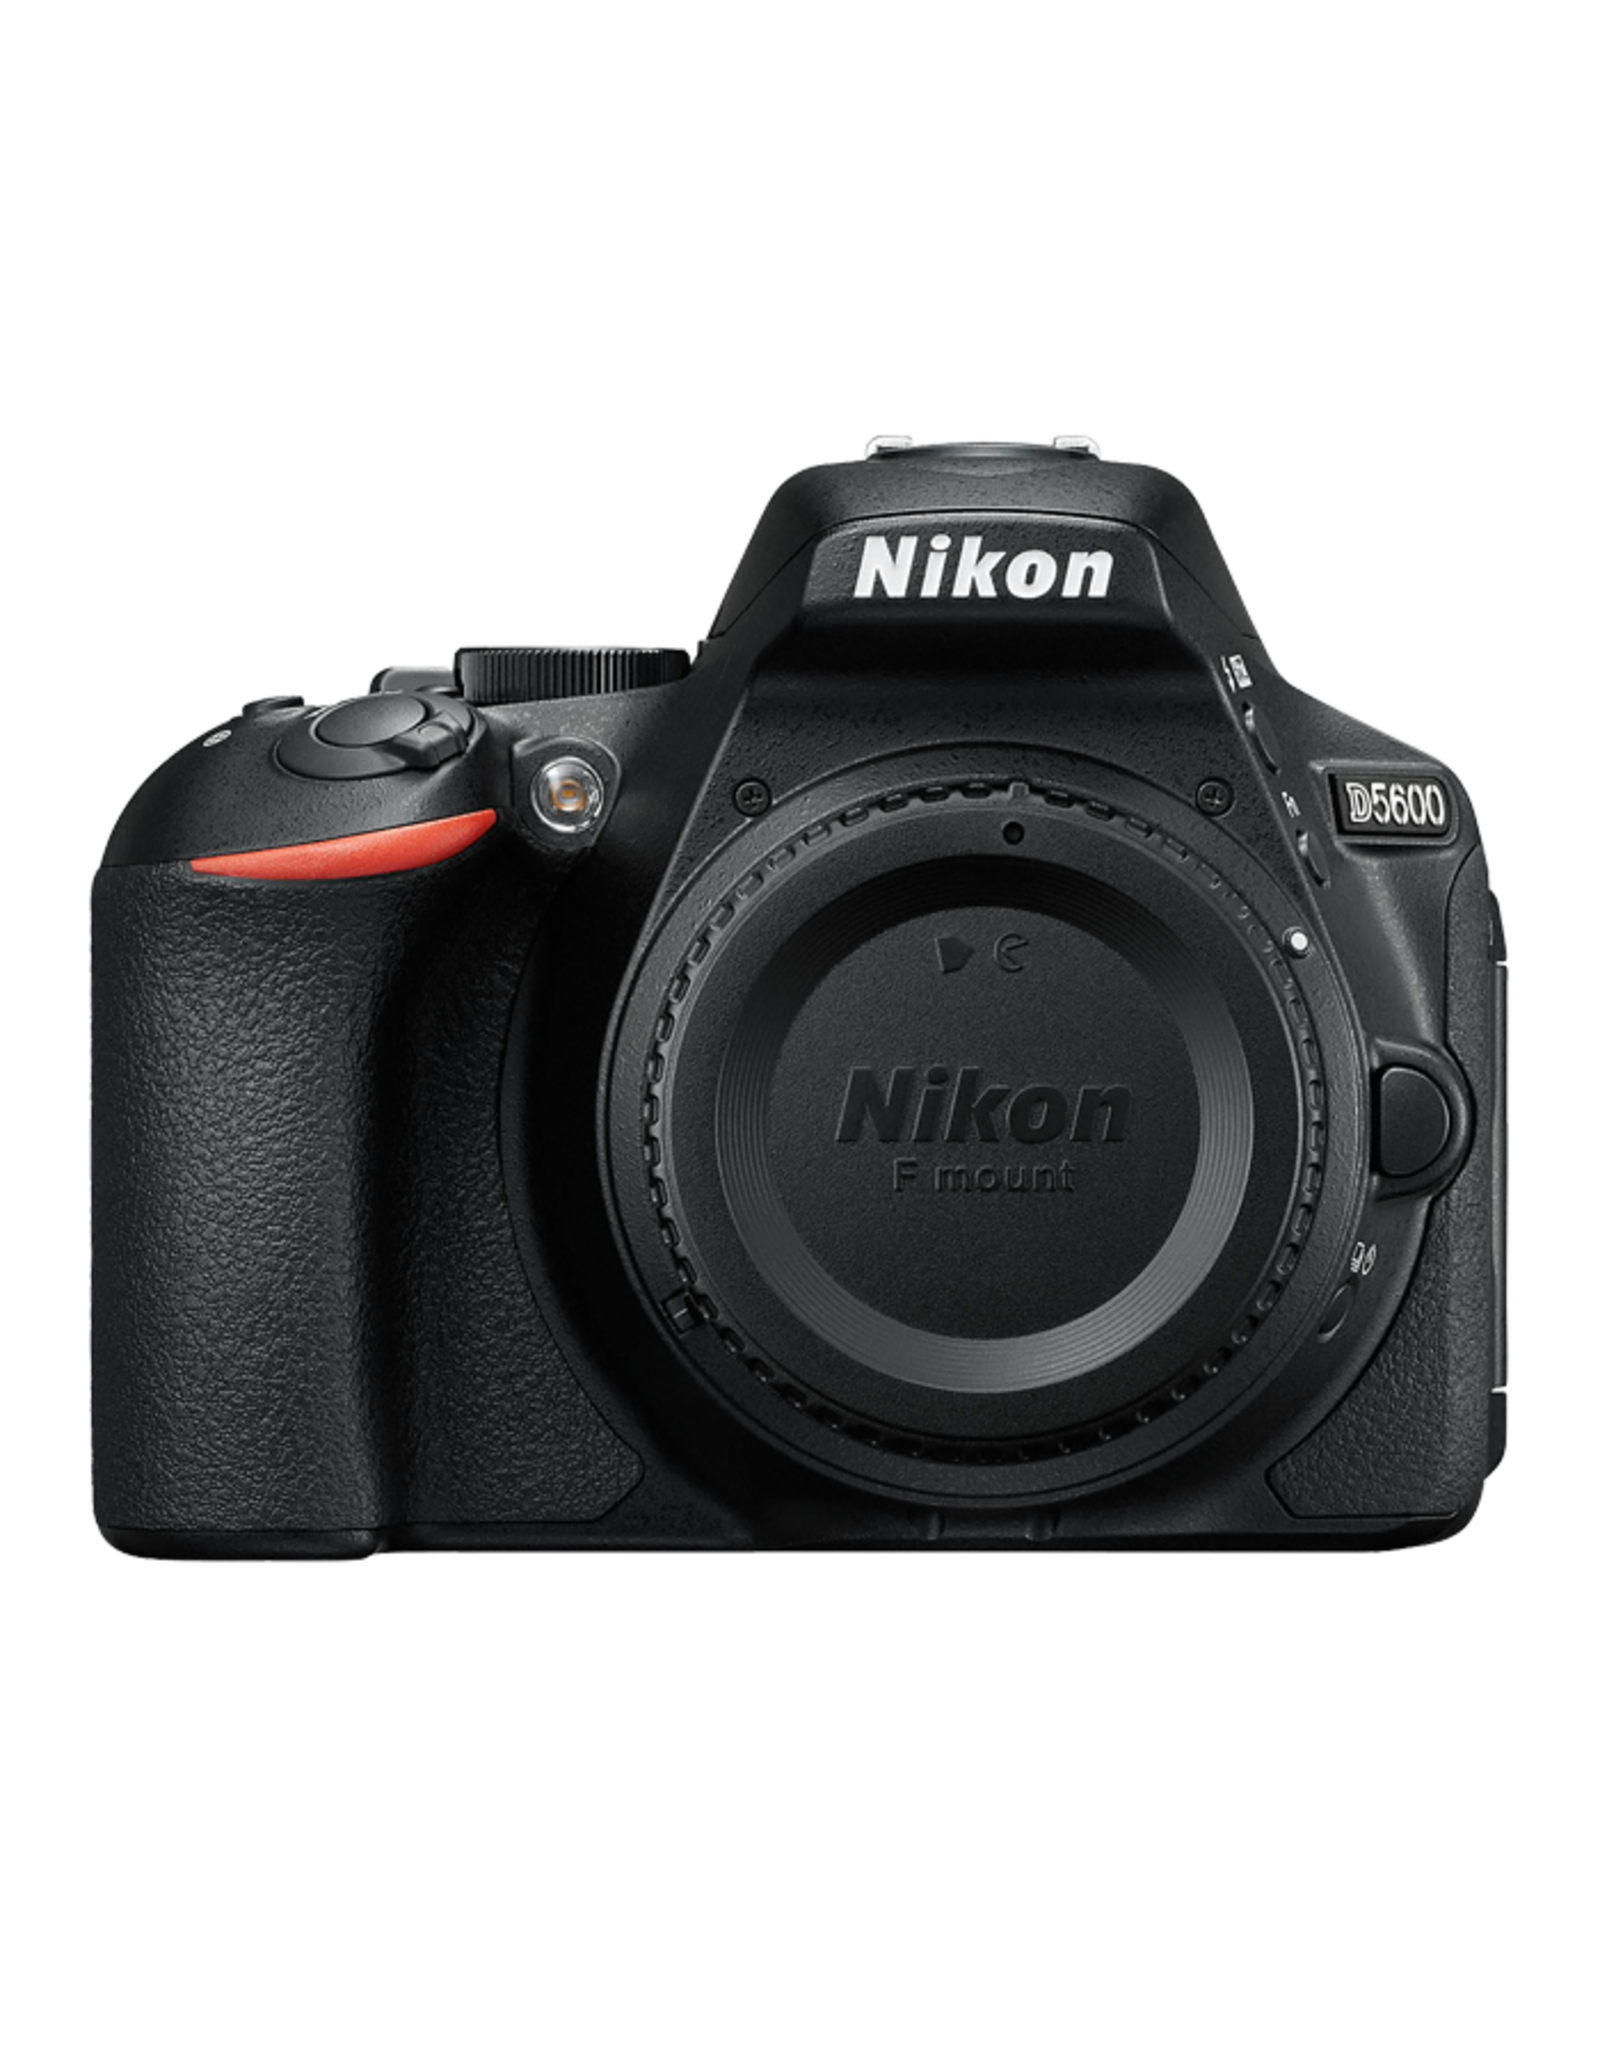 Nikon D5600 DSLR Camera là một máy ảnh chuyên nghiệp, sử dụng chiếc máy ảnh này để chụp ảnh chân dung, thiên nhiên, cảnh quan hoặc những bức ảnh khác, bạn sẽ hài lòng với chất lượng và độ sắc nét của ảnh. Với những tính năng mạnh mẽ như lấy nét nhanh, quay phim Full HD, kết nối Wi-Fi và Bluetooth, Nikon D5600 DSLR Camera sẽ là sự lựa chọn tốt nhất cho những người yêu nghệ thuật chụp ảnh. 